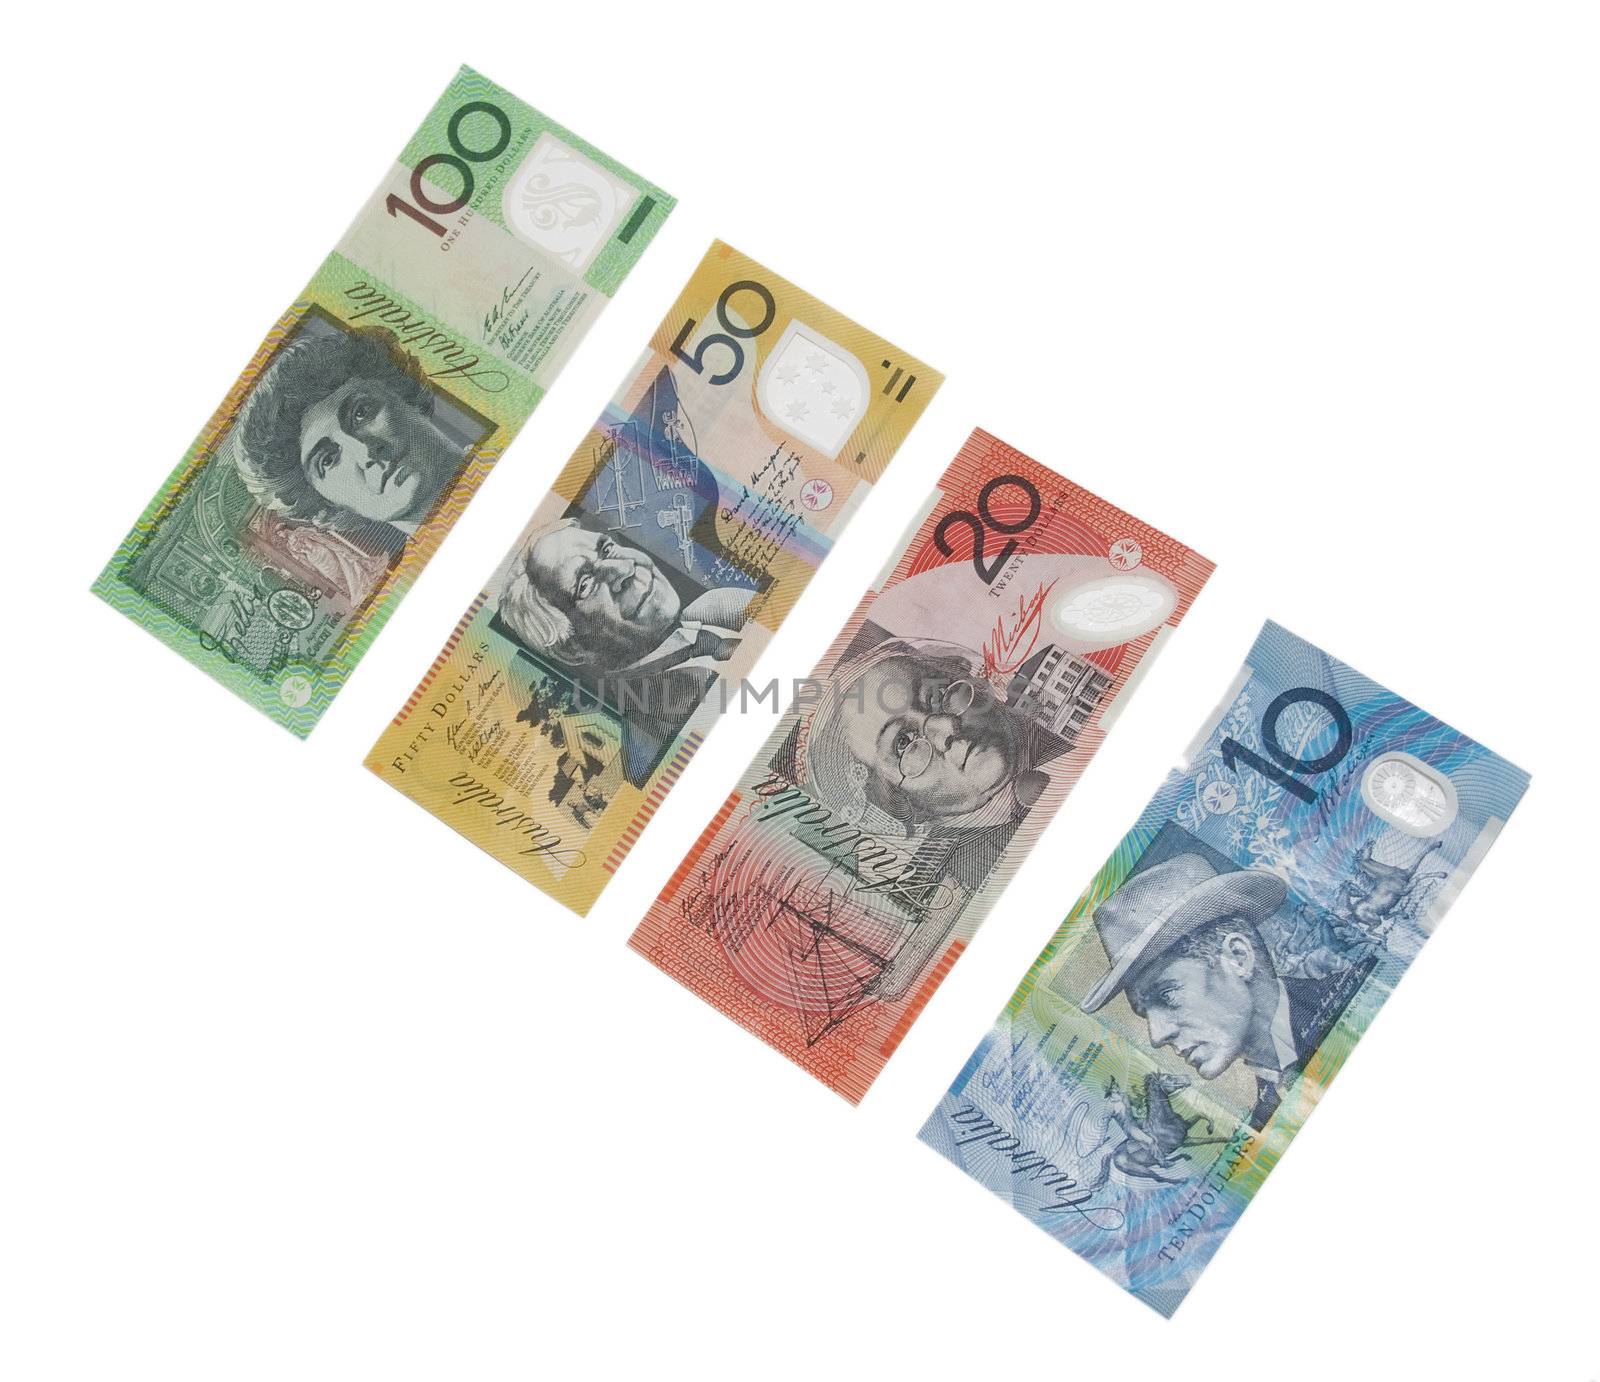 Australian money by wojciechkozlowski